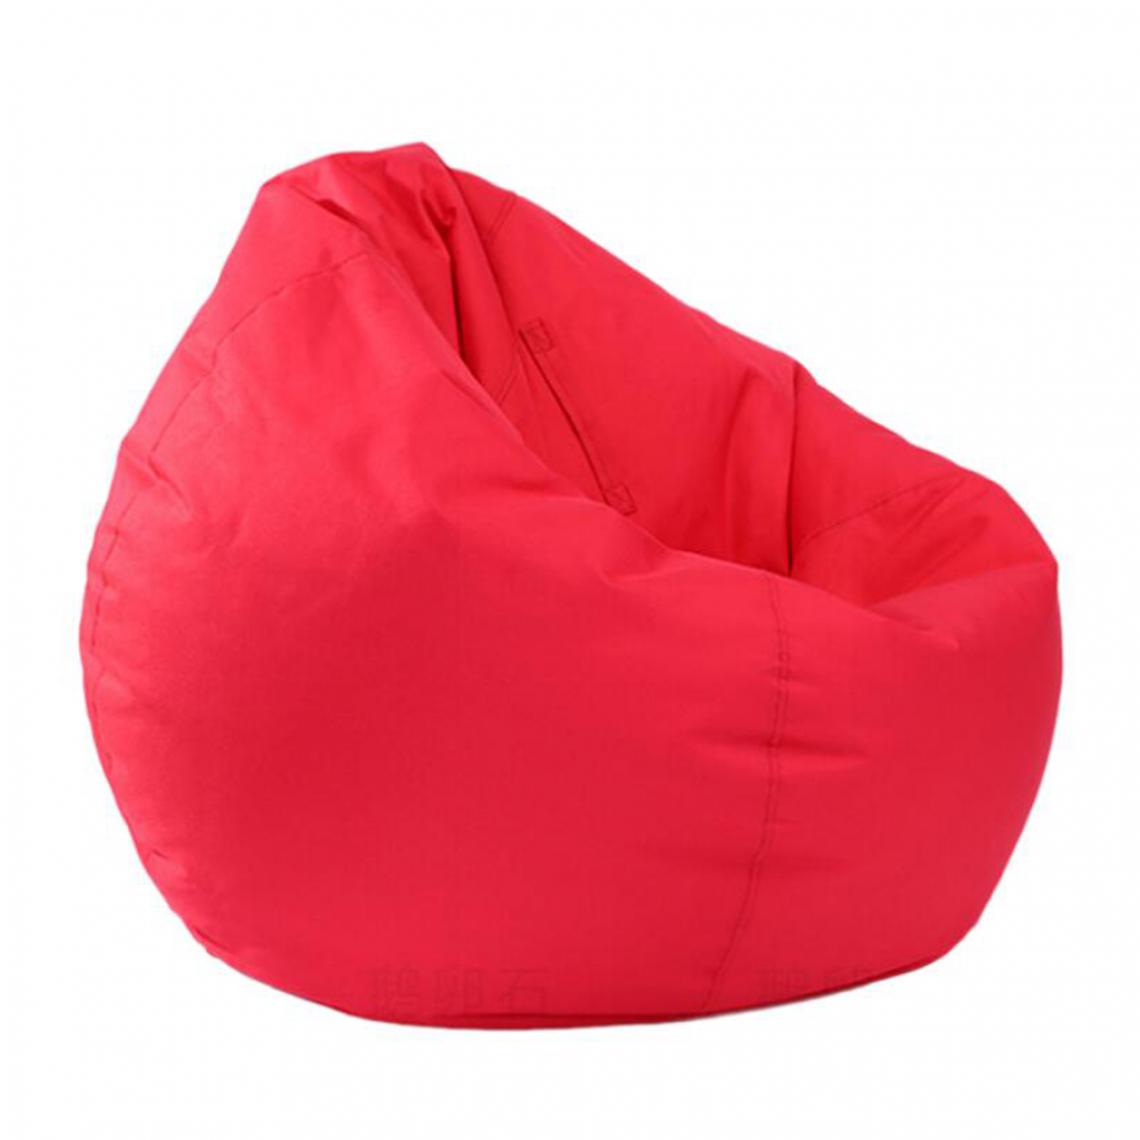 marque generique - sac de haricots couverture animal rembourré jouet rangement organisateurs literie rose rouge - Tiroir coulissant